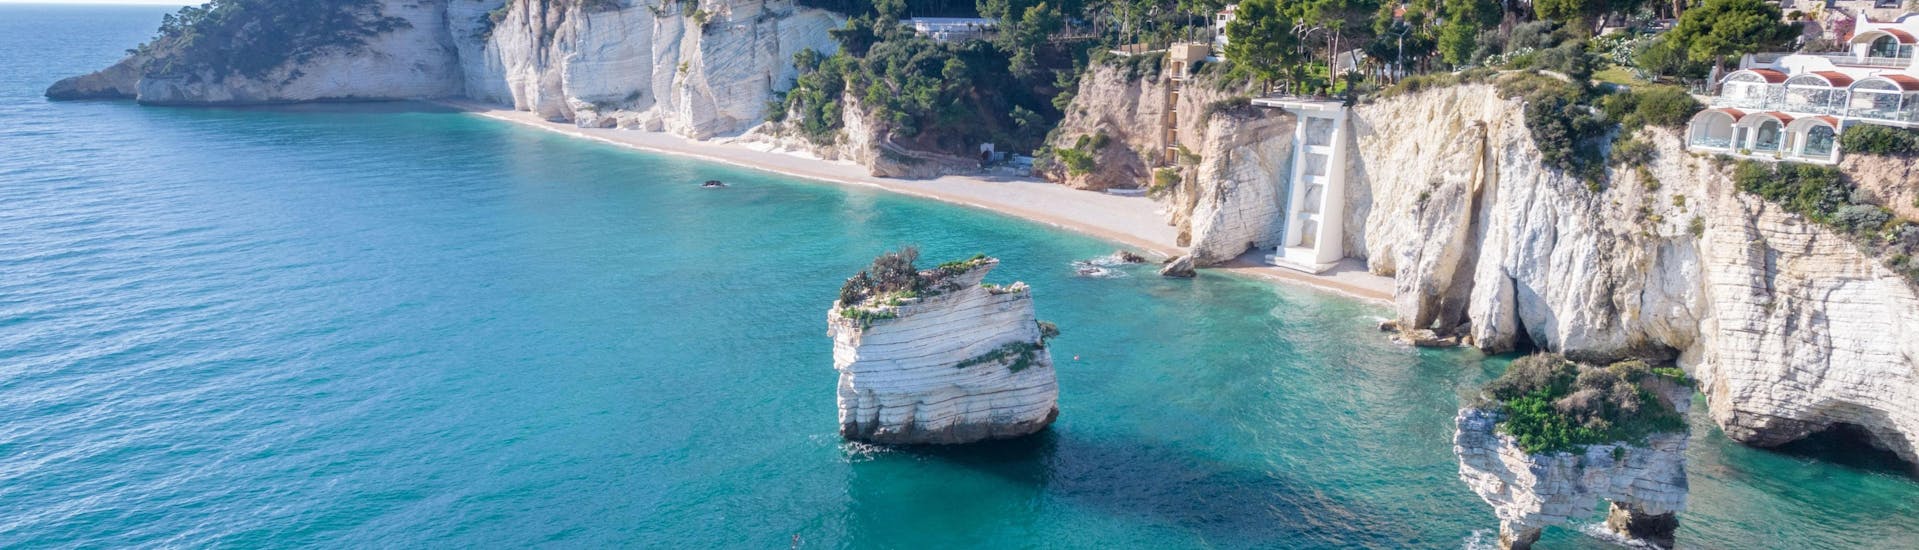 Luchtfoto van de Baia delle Zagare en de kust op de achtergrond.